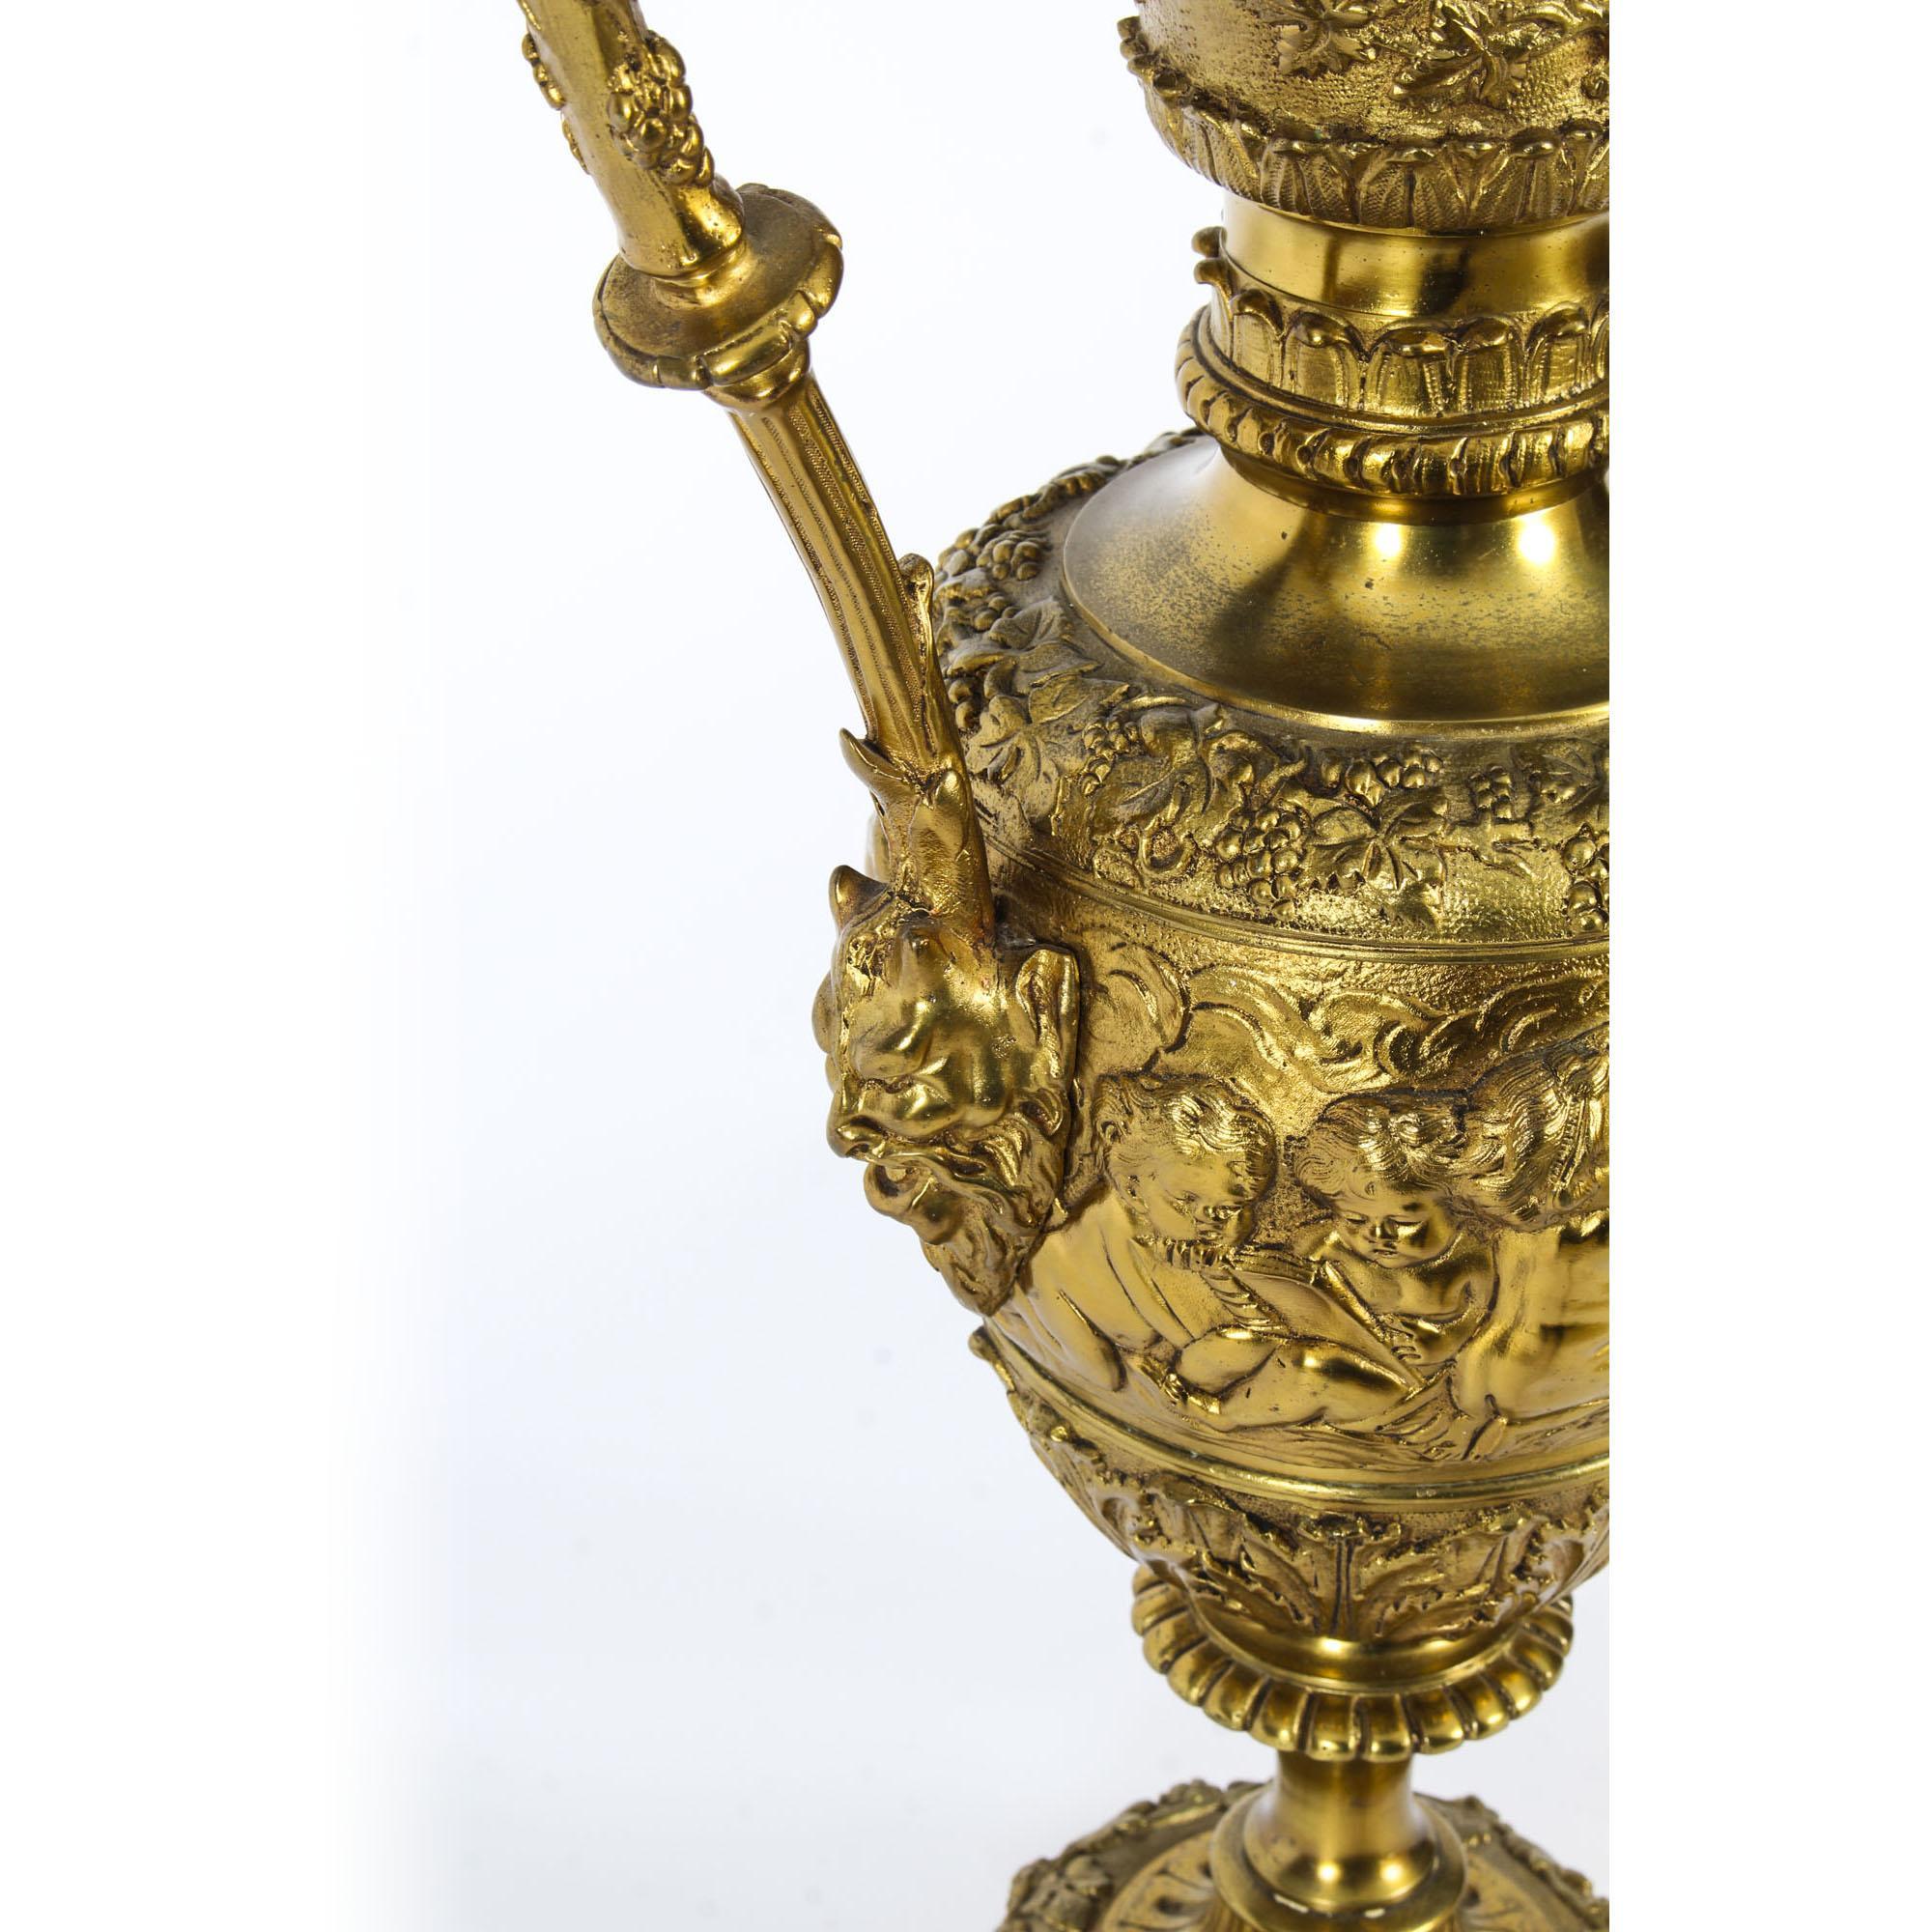 Antique Gilt Bronze Renaissance Revival Table Lamp, 19th Century For Sale 7